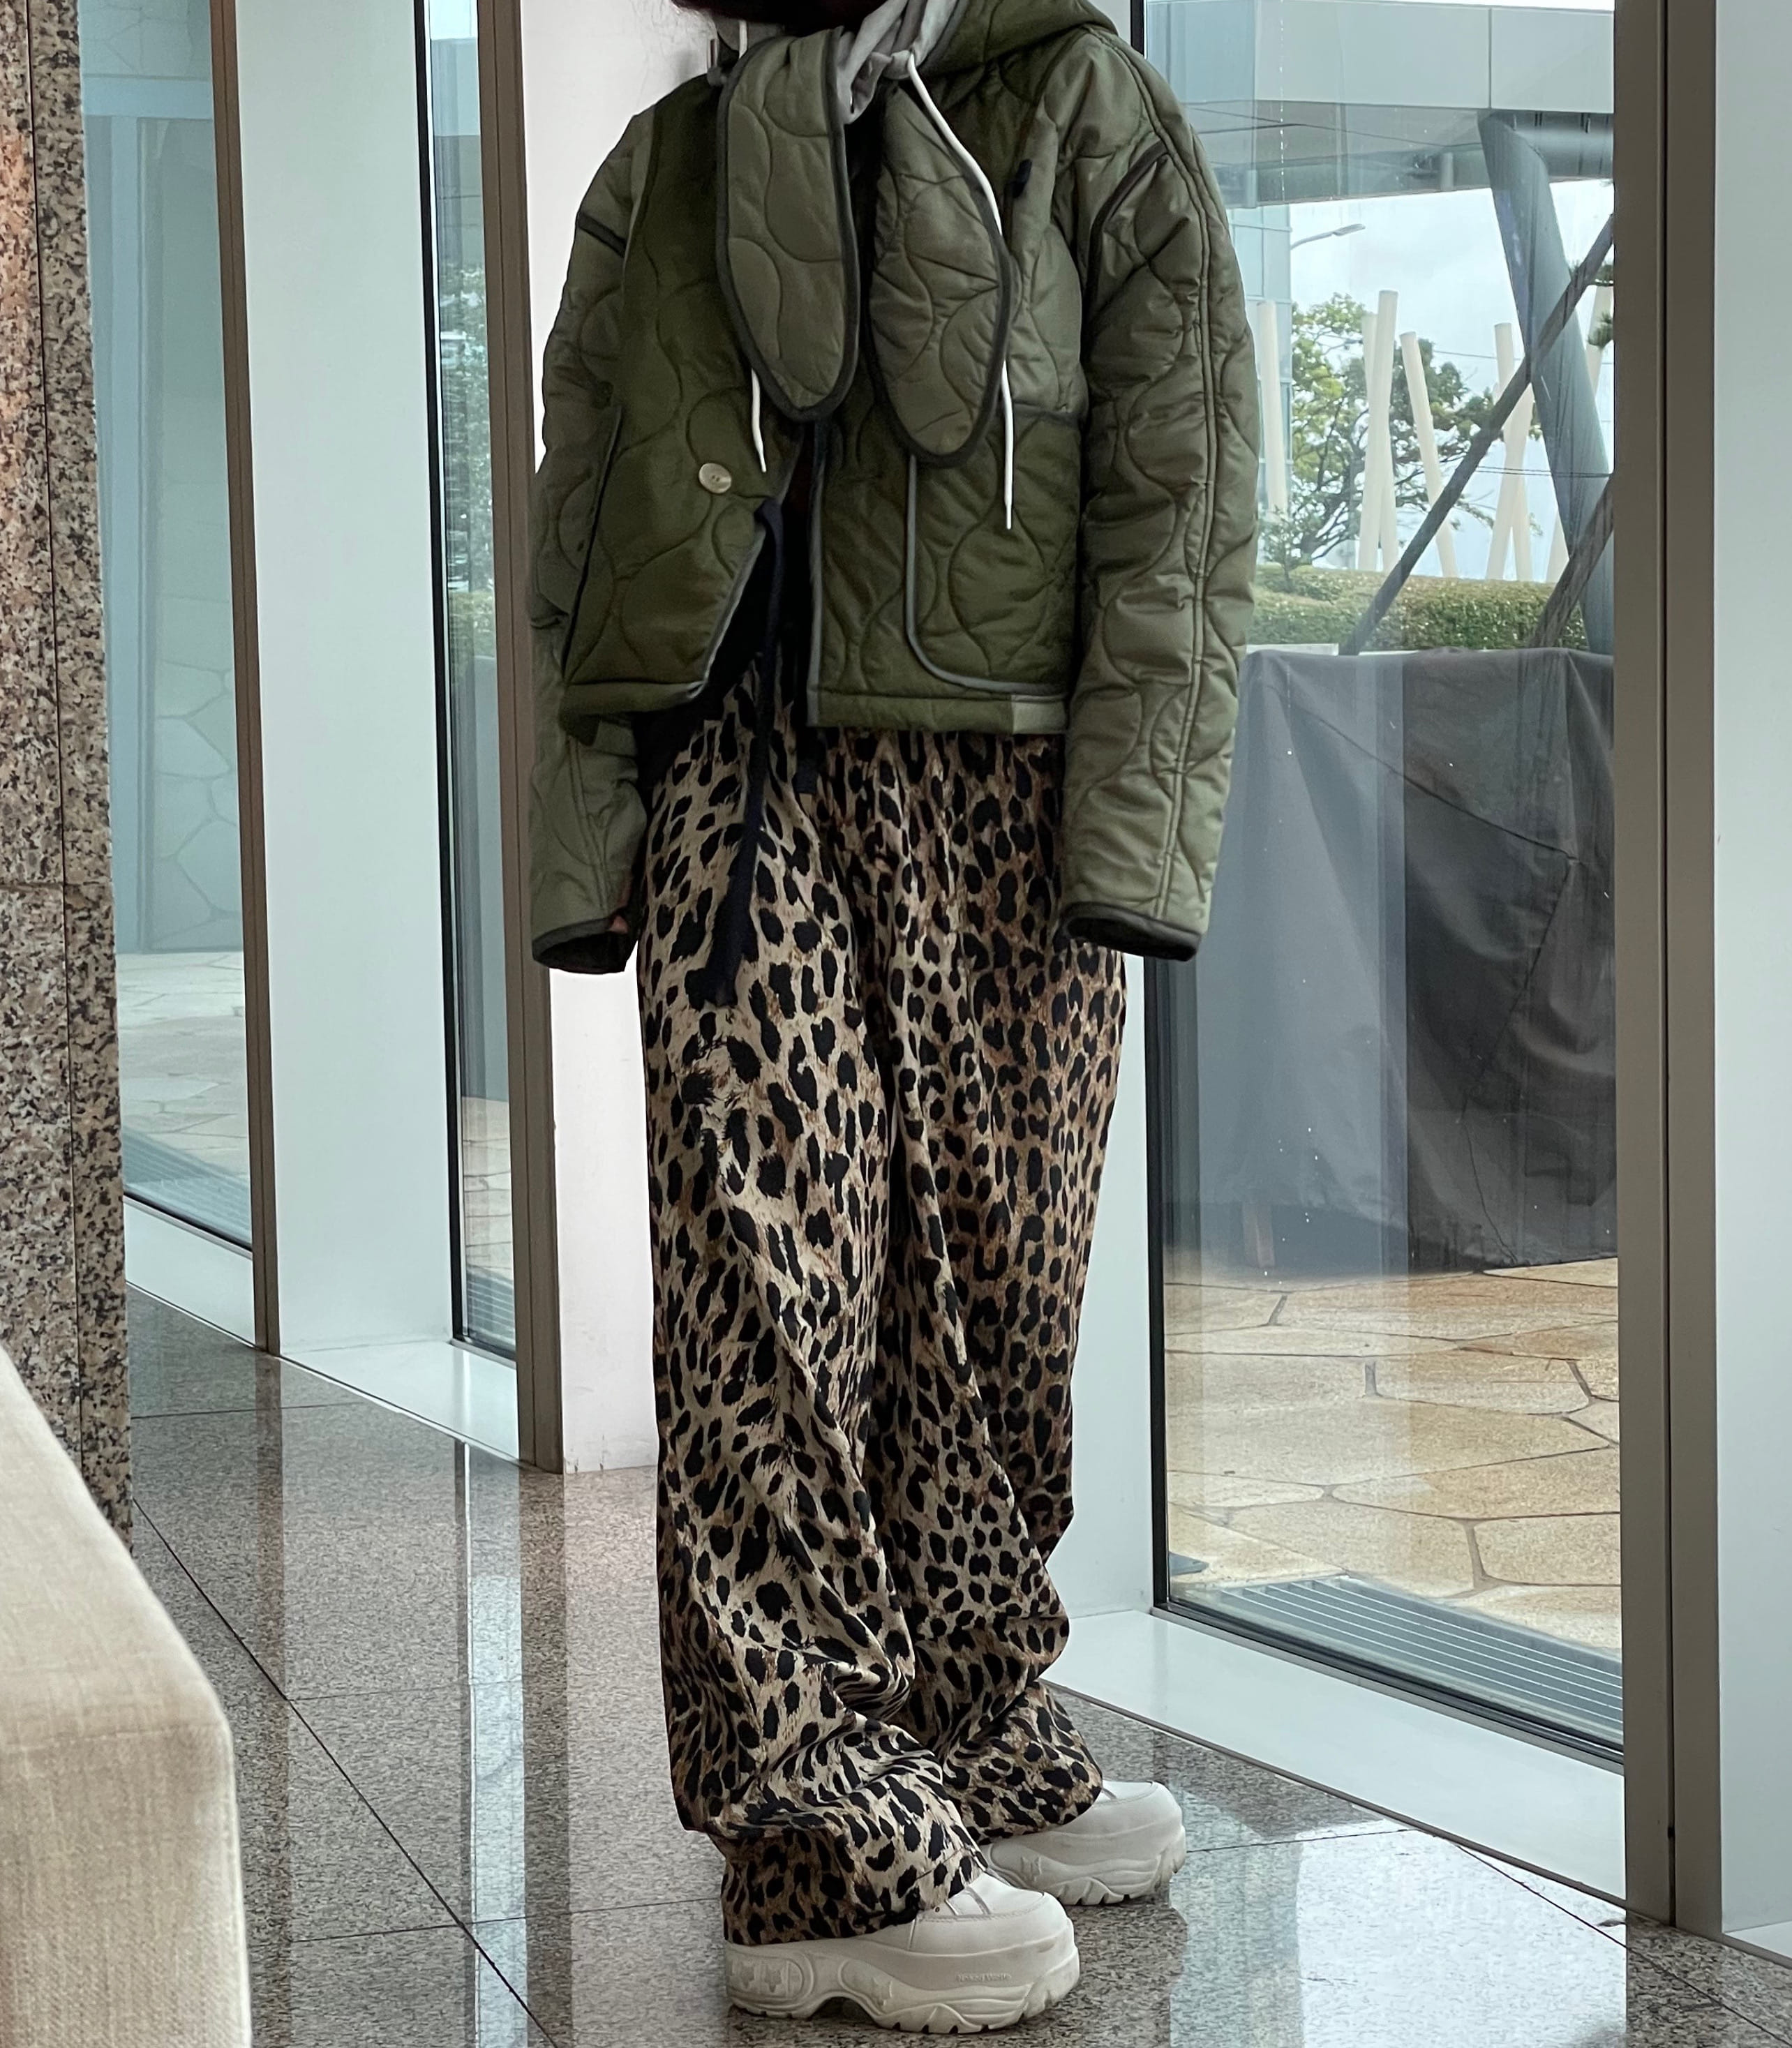 leopard pants